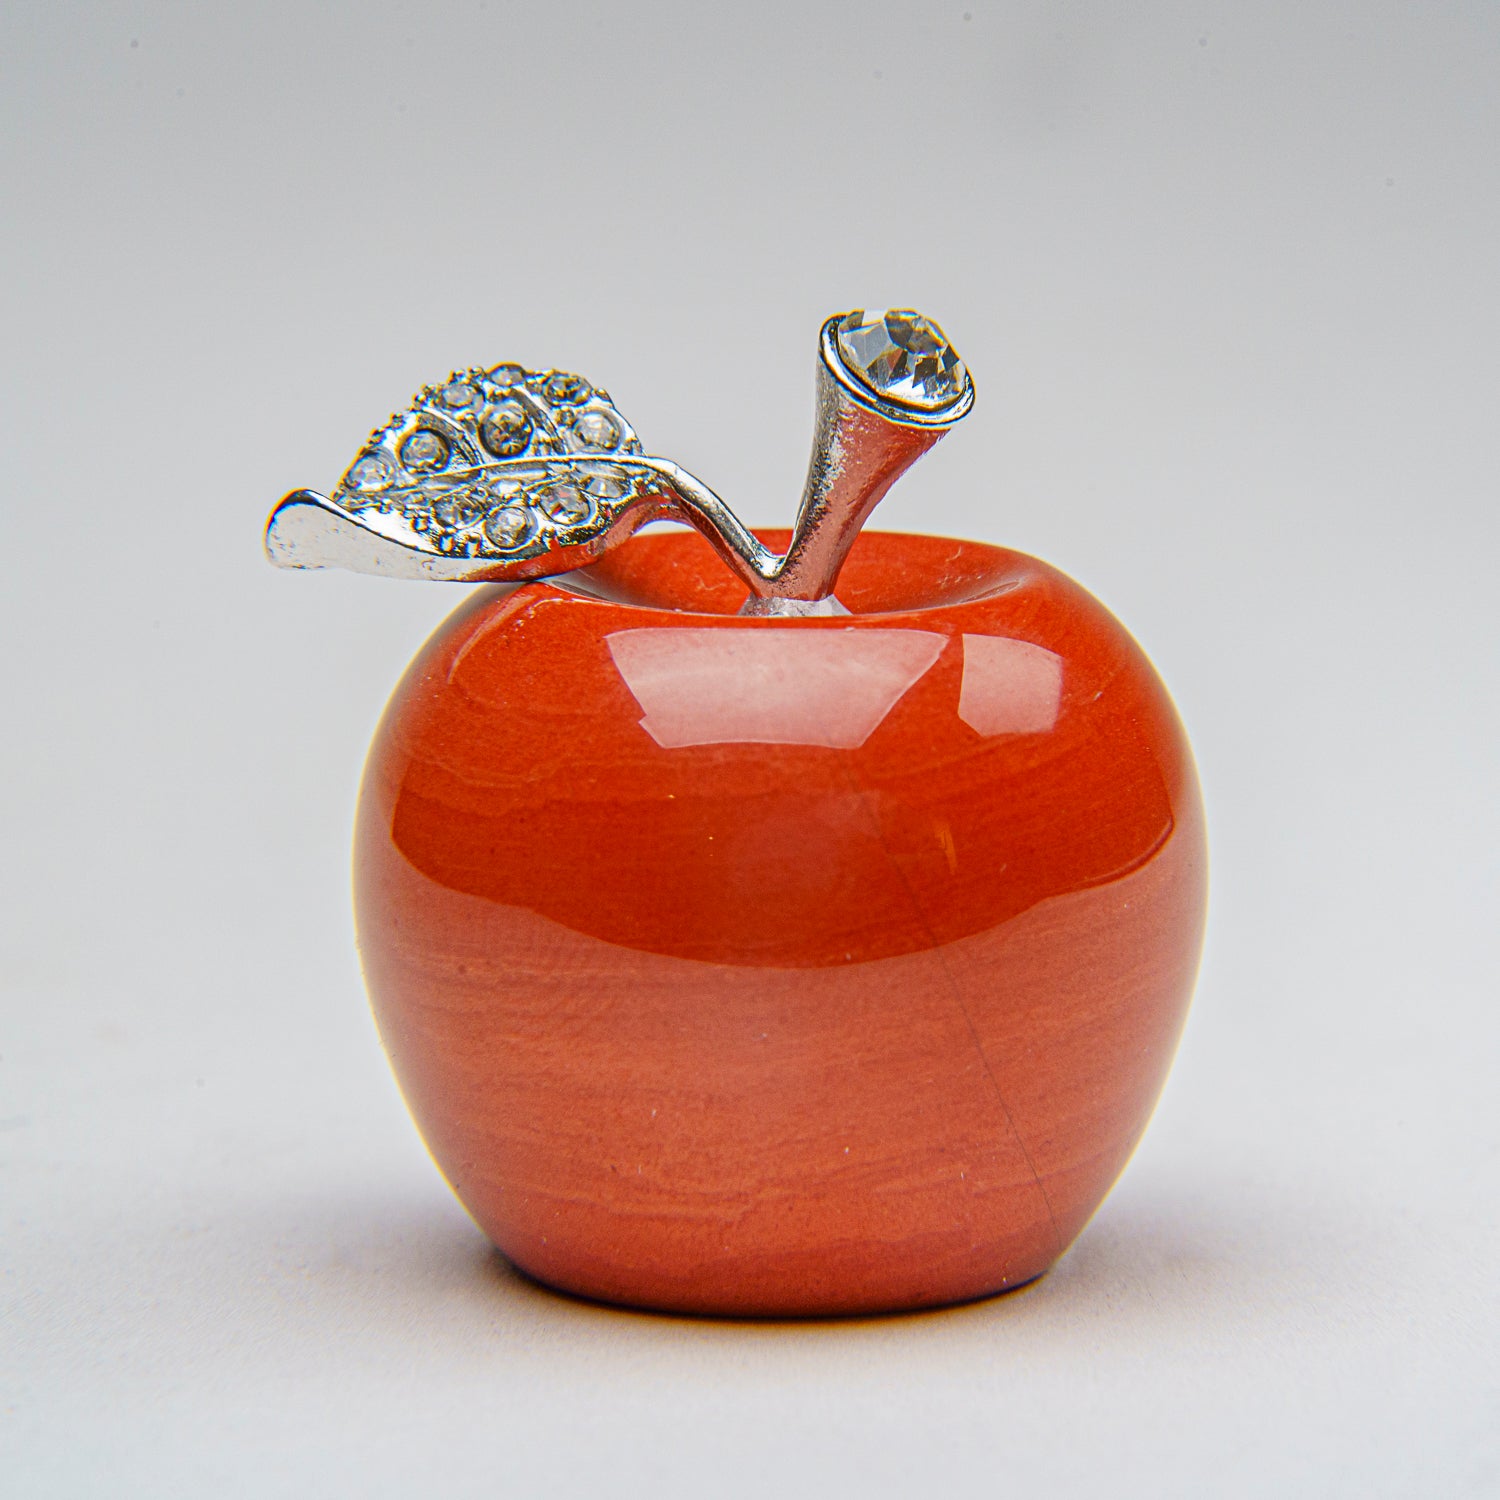 Genuine Polished Red Japser Apple Carving